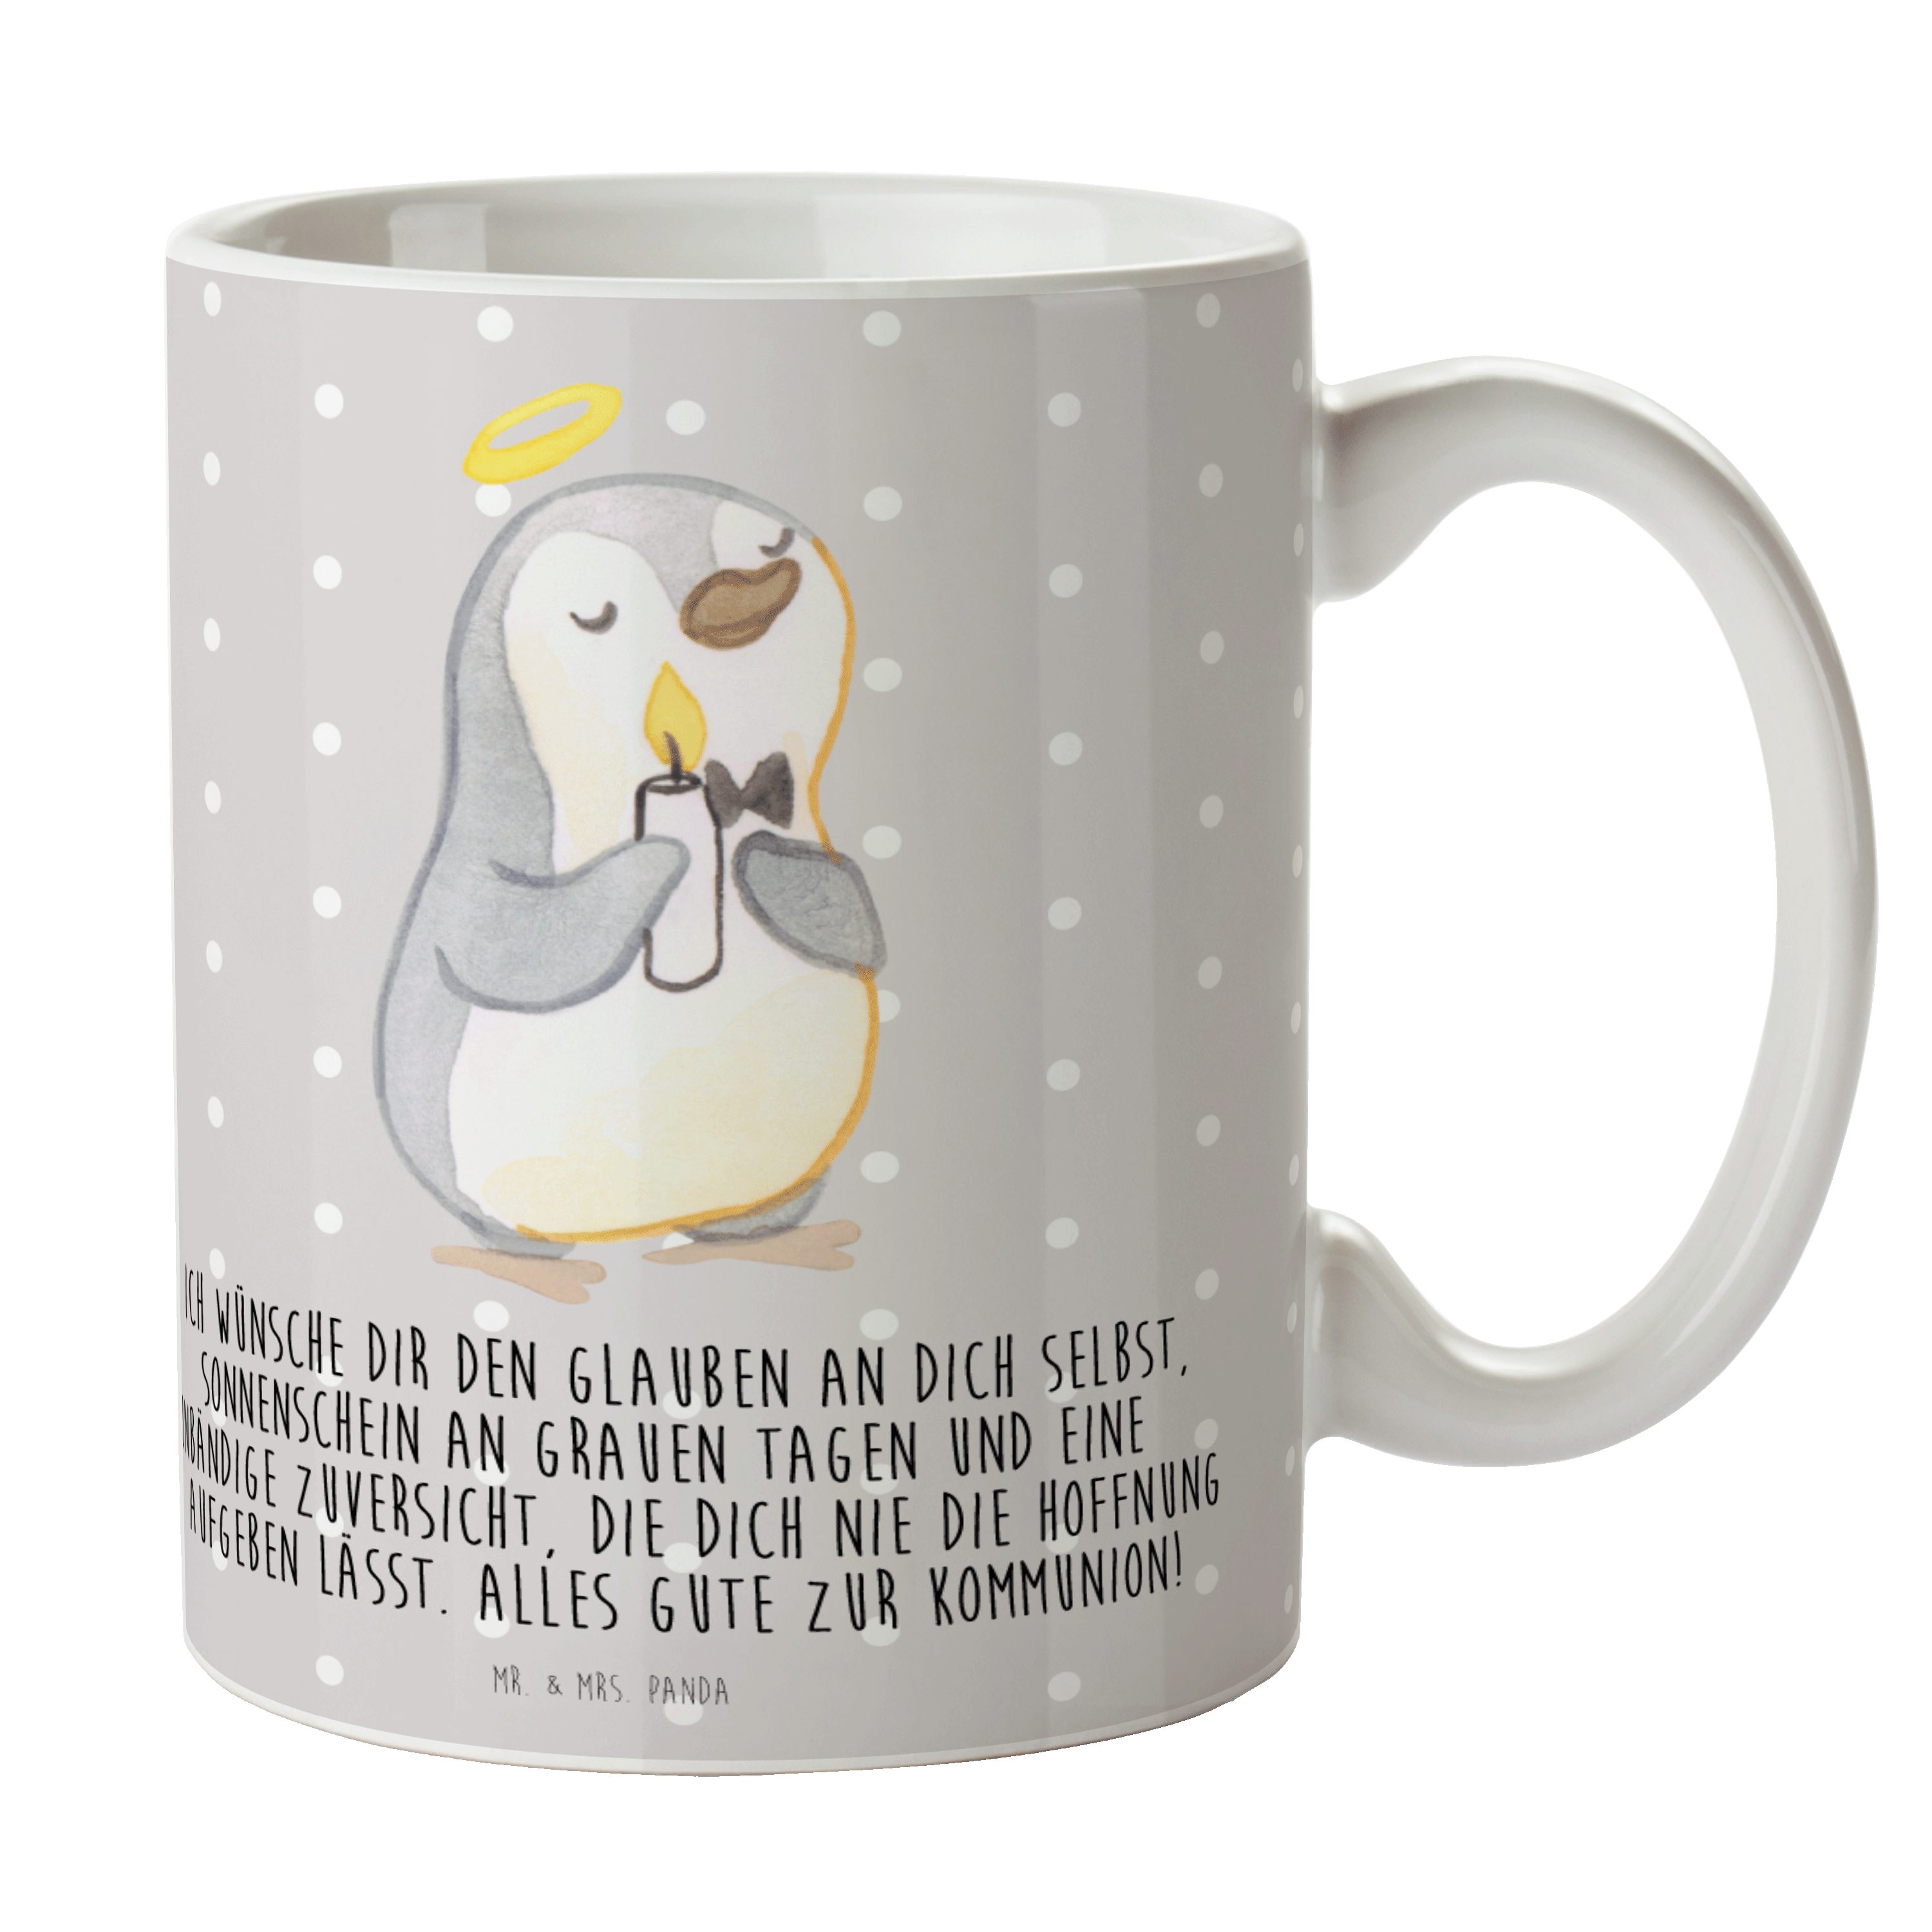 Mr. & Mrs. Panda Tasse Pinguin Kommunion - Grau Pastell - Geschenk, Tasse, Geschenk Tasse, B, Keramik